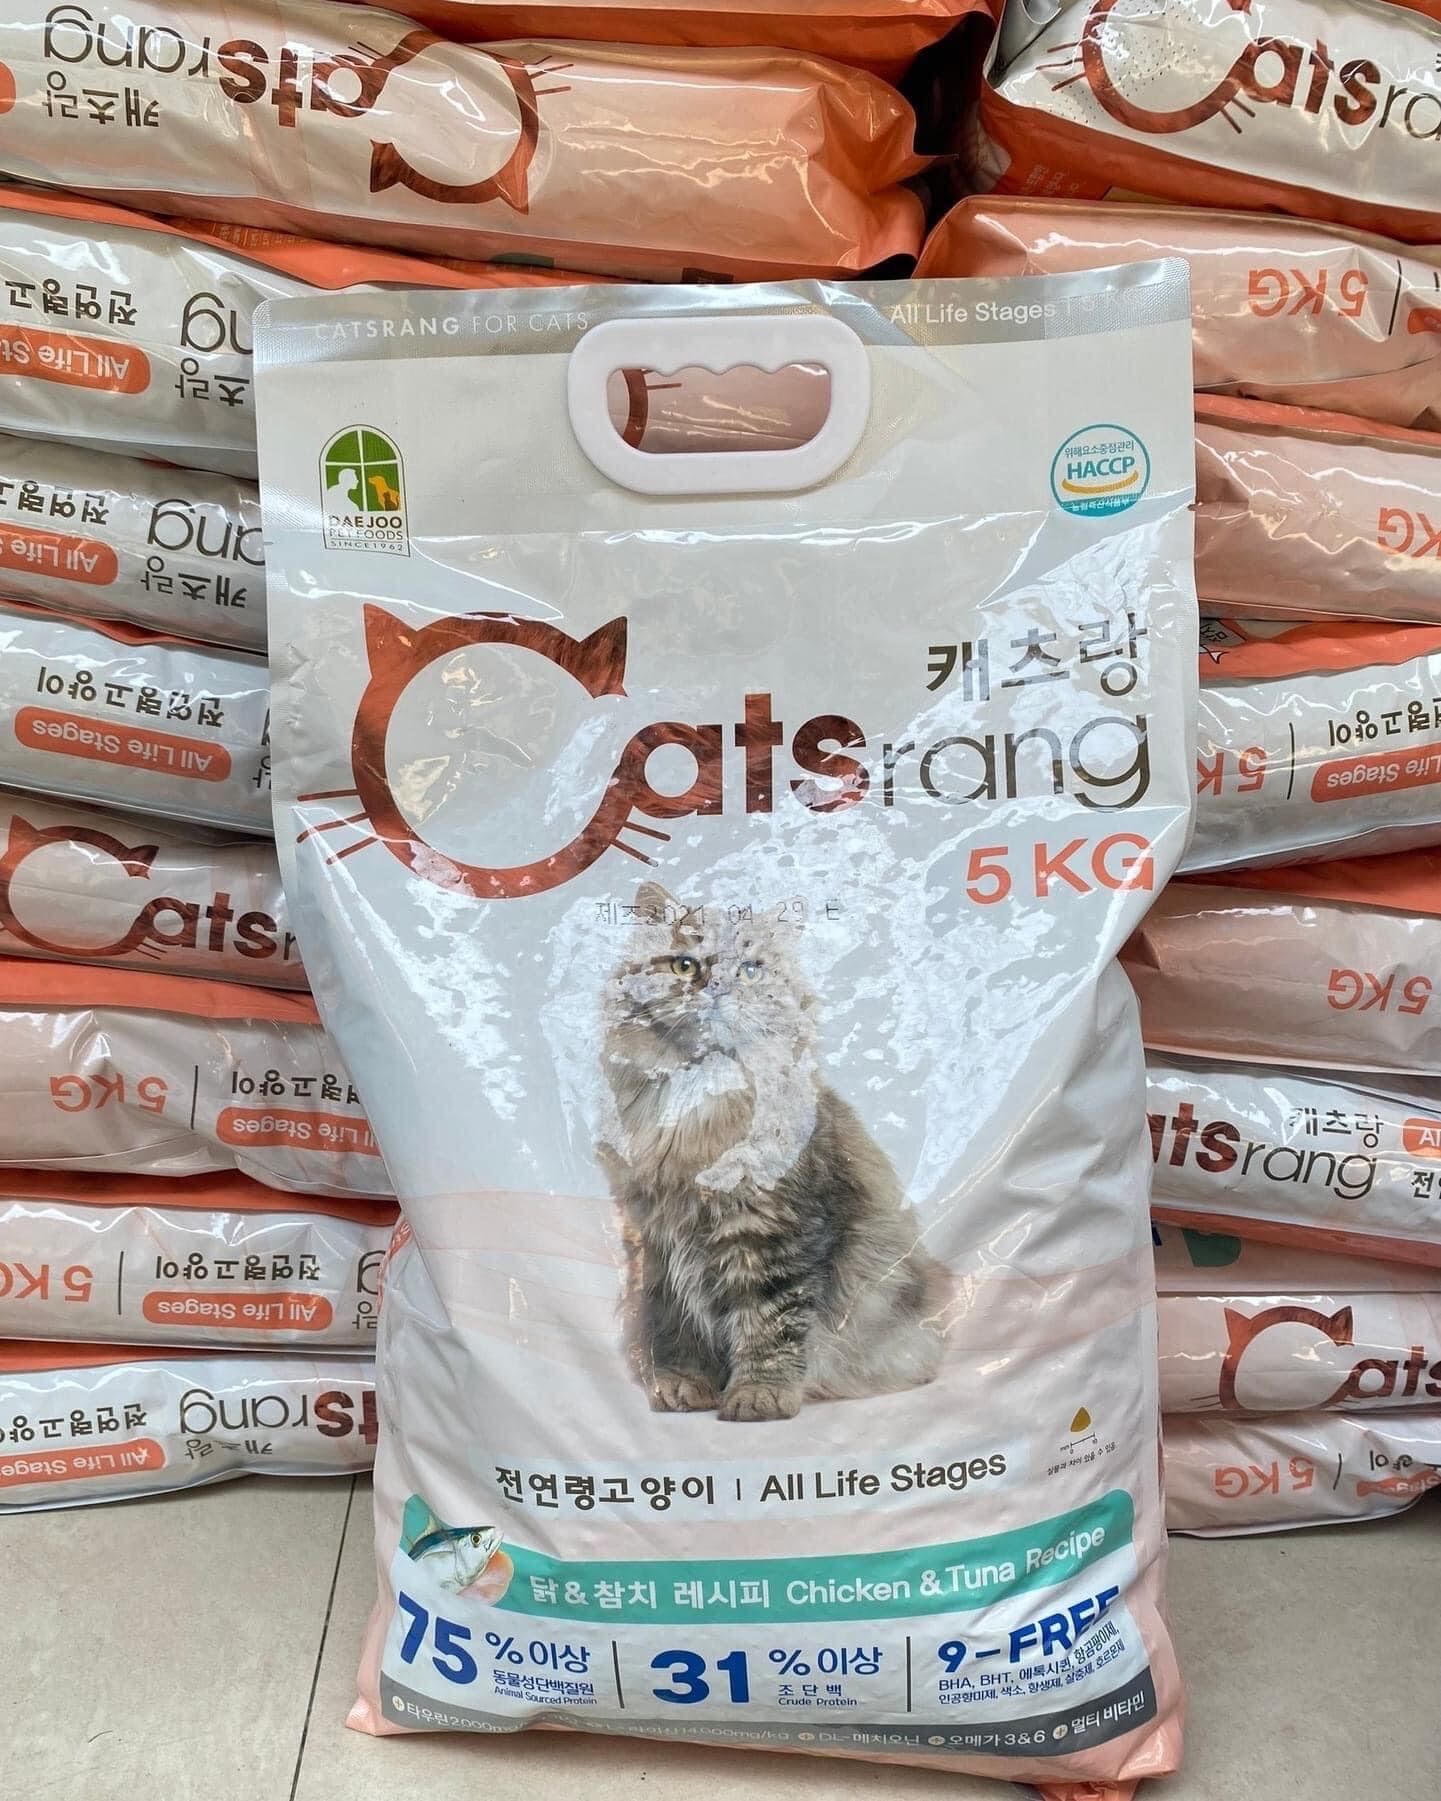 Thức ăn hạt cho mèo mọi lứa tuổi Catsrang 5KG- Hạt cho mèo catsrang 5KG - CHÍNH HÃNG